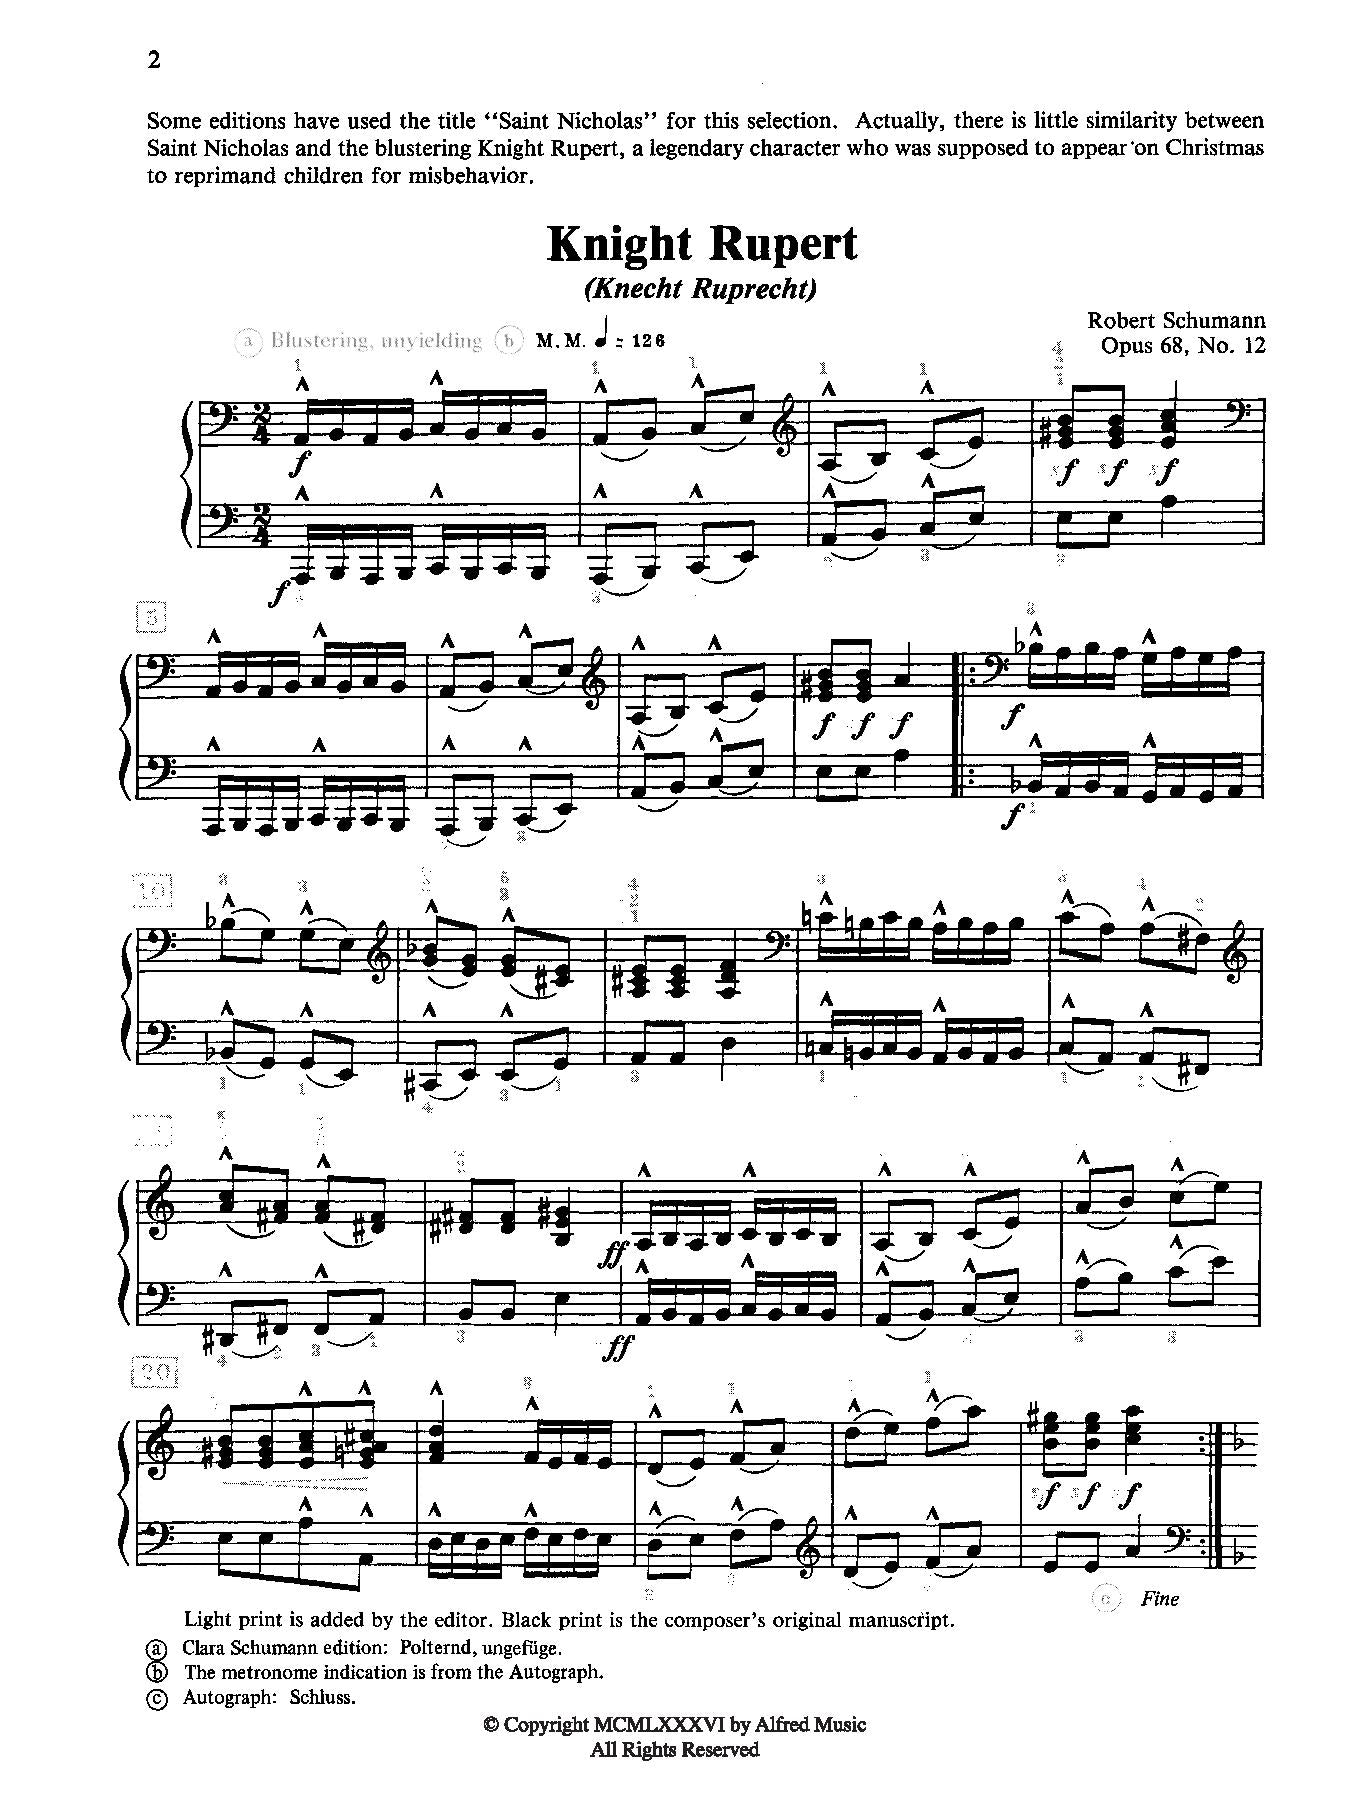 Schumann: Knight Rupert Opus 68 No. 12